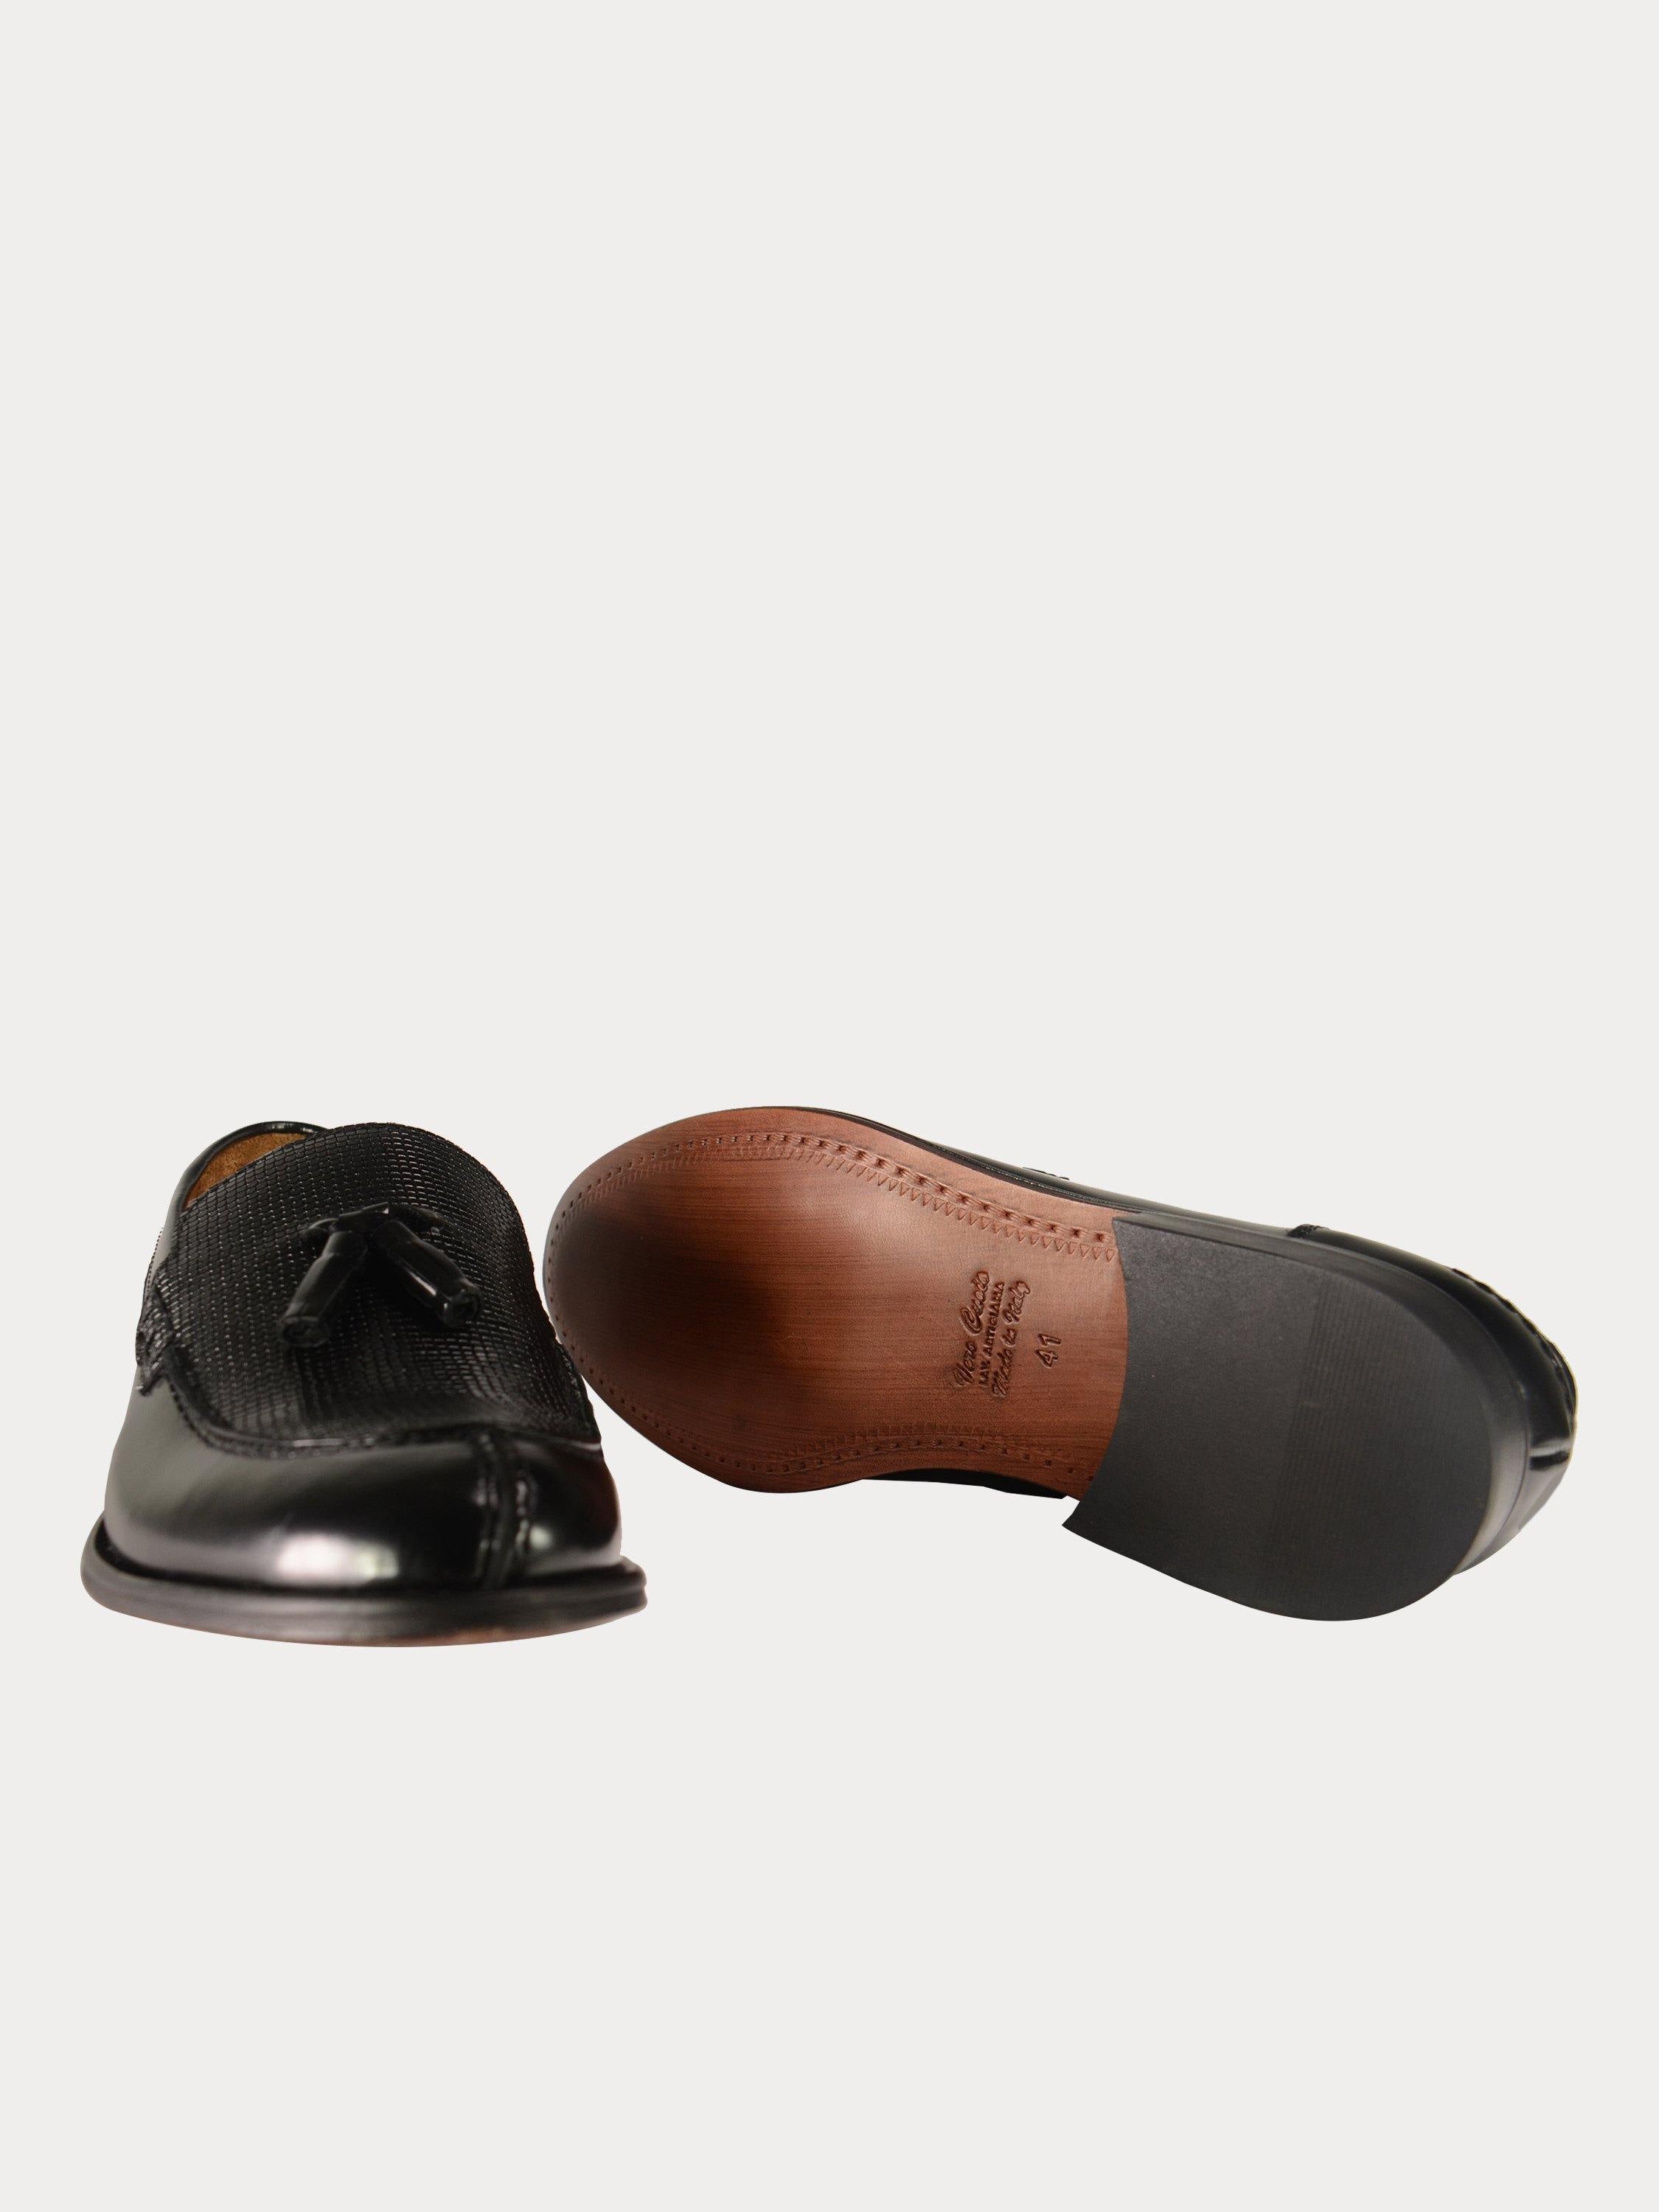 Franzini Men Formal Slip On Leather Shoes #color_Black